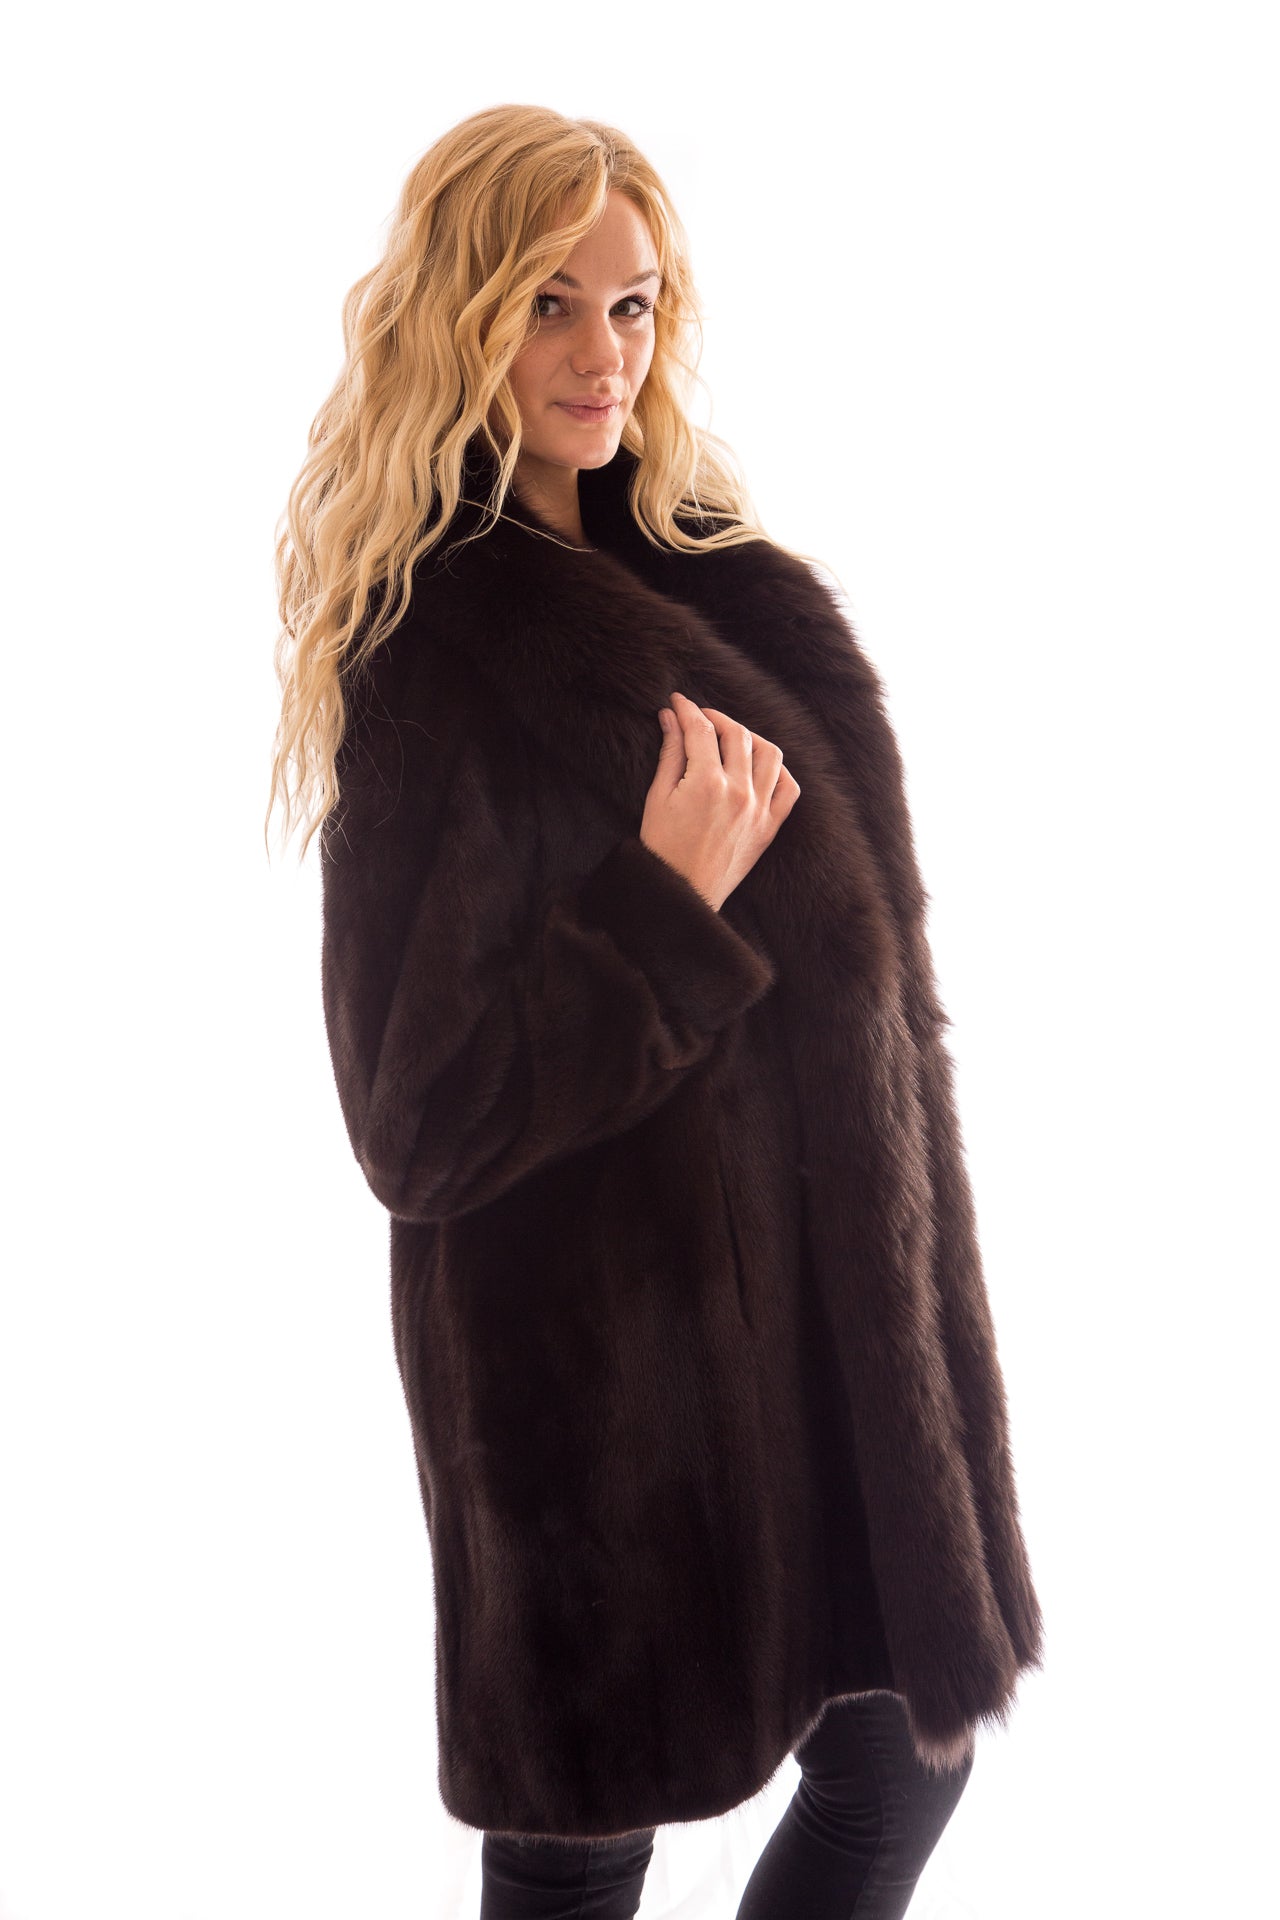 Mahogany Mink 3/4 Coat with Fox Tuxedo – Vollbracht Furs